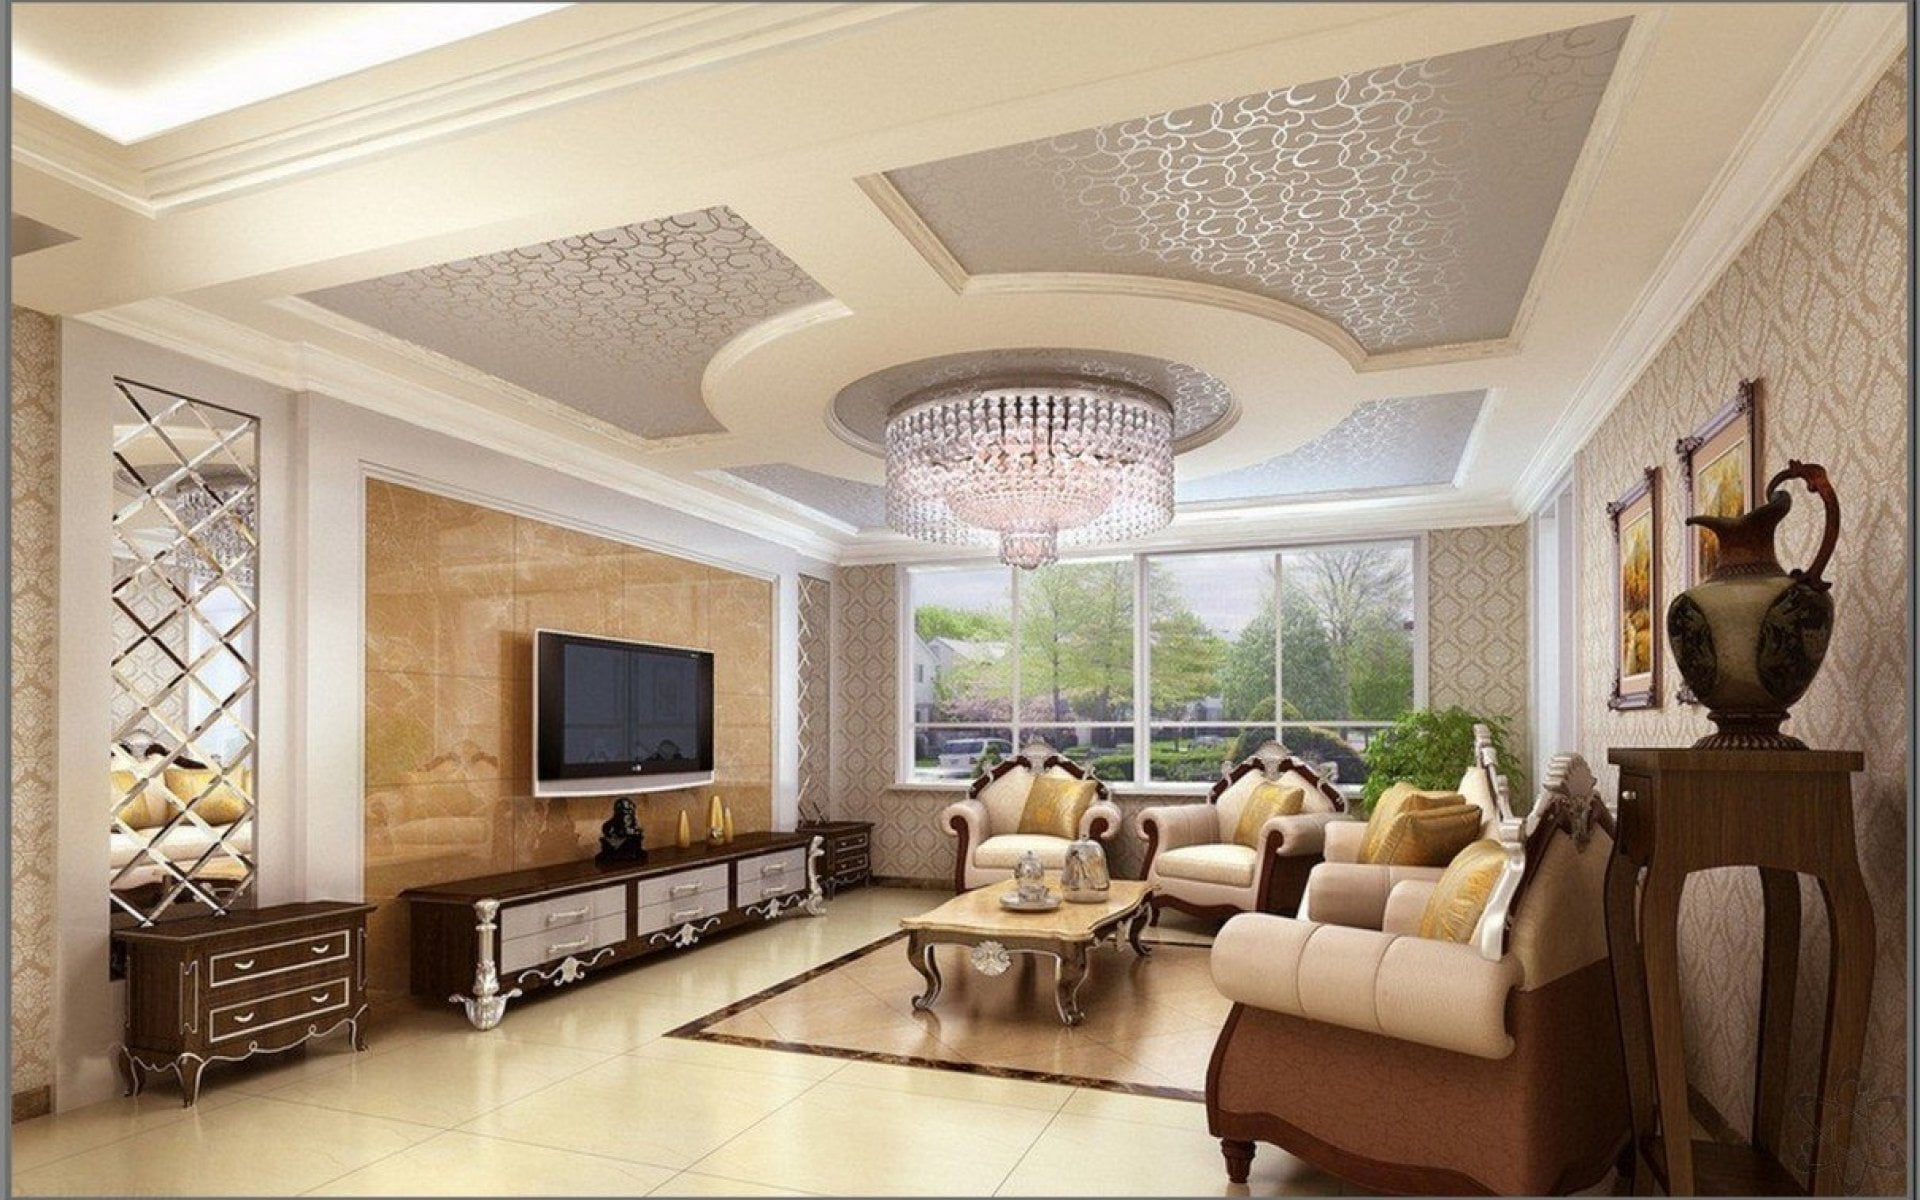 Desain Ruang Tamu Klasik Modern Interior Ruang Tamu Mewah Idaman Terbaik⁃d⁃jpg